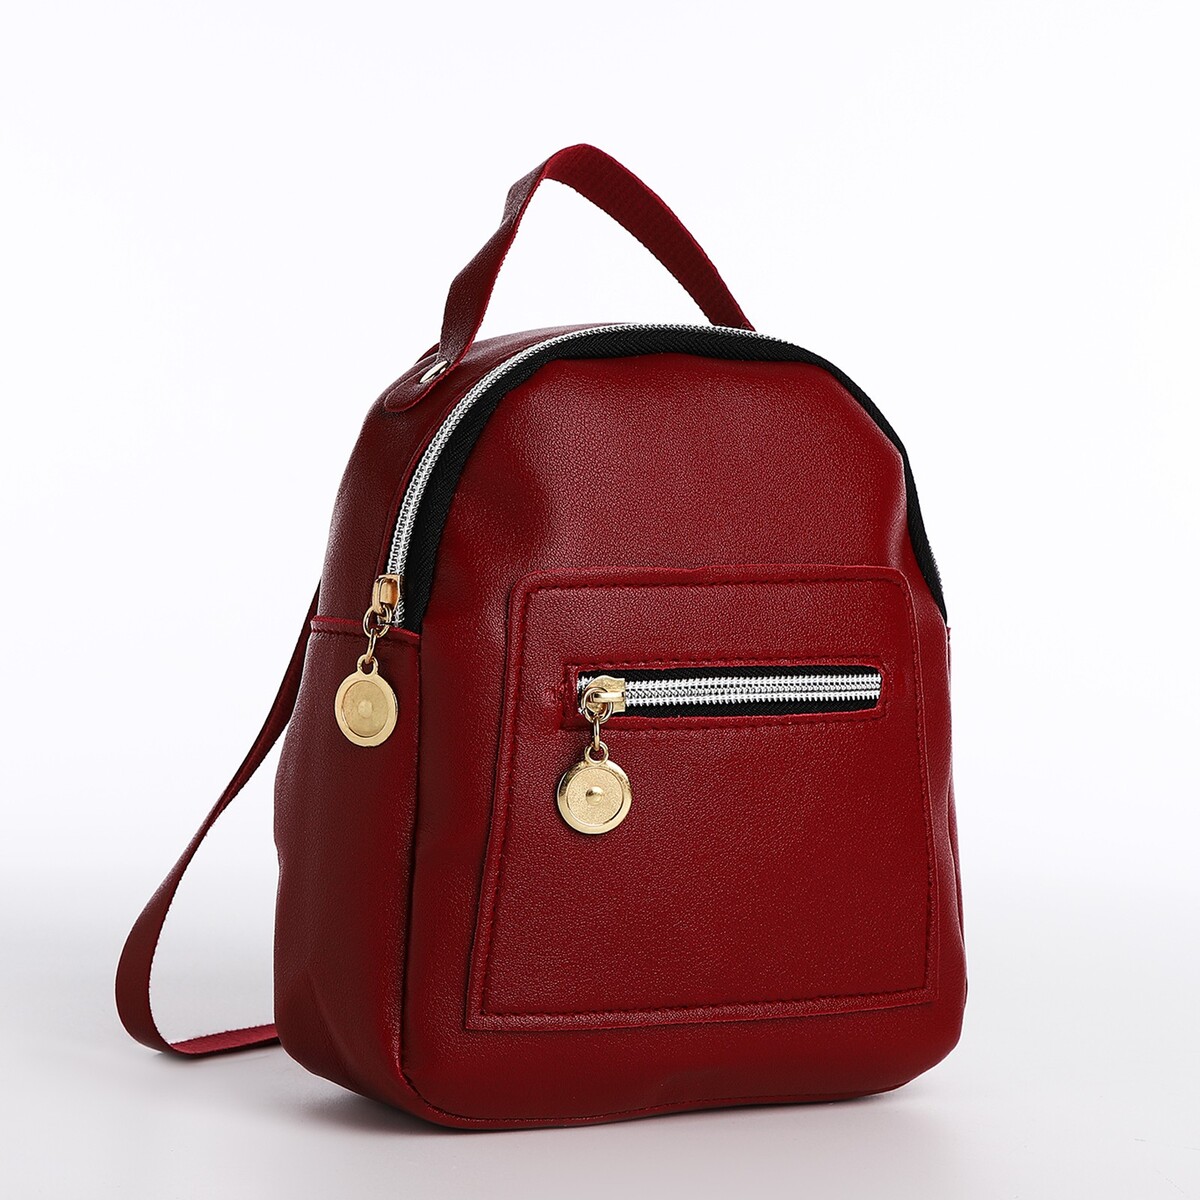 Мини-рюкзак женский из искусственной кожи на молнии, 1 карман, цвет бордовый pixel bag рюкзак с led дисплеем pixel max red line бордовый